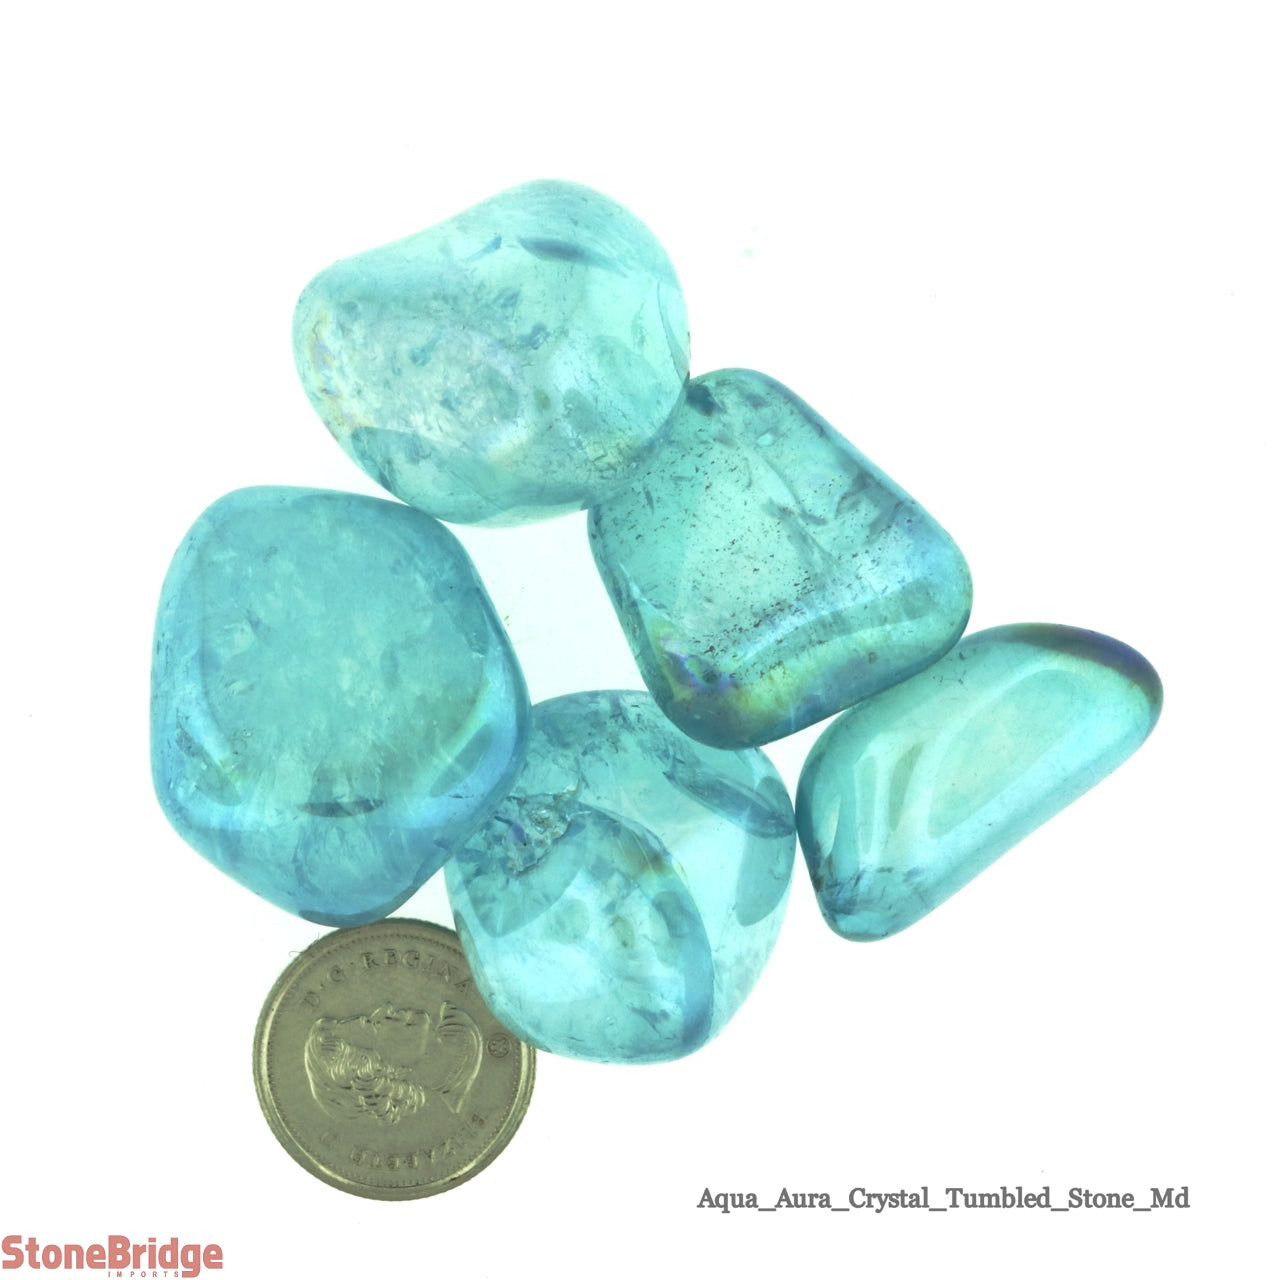 Aqua Aura Tumbled Stones - 50g bag